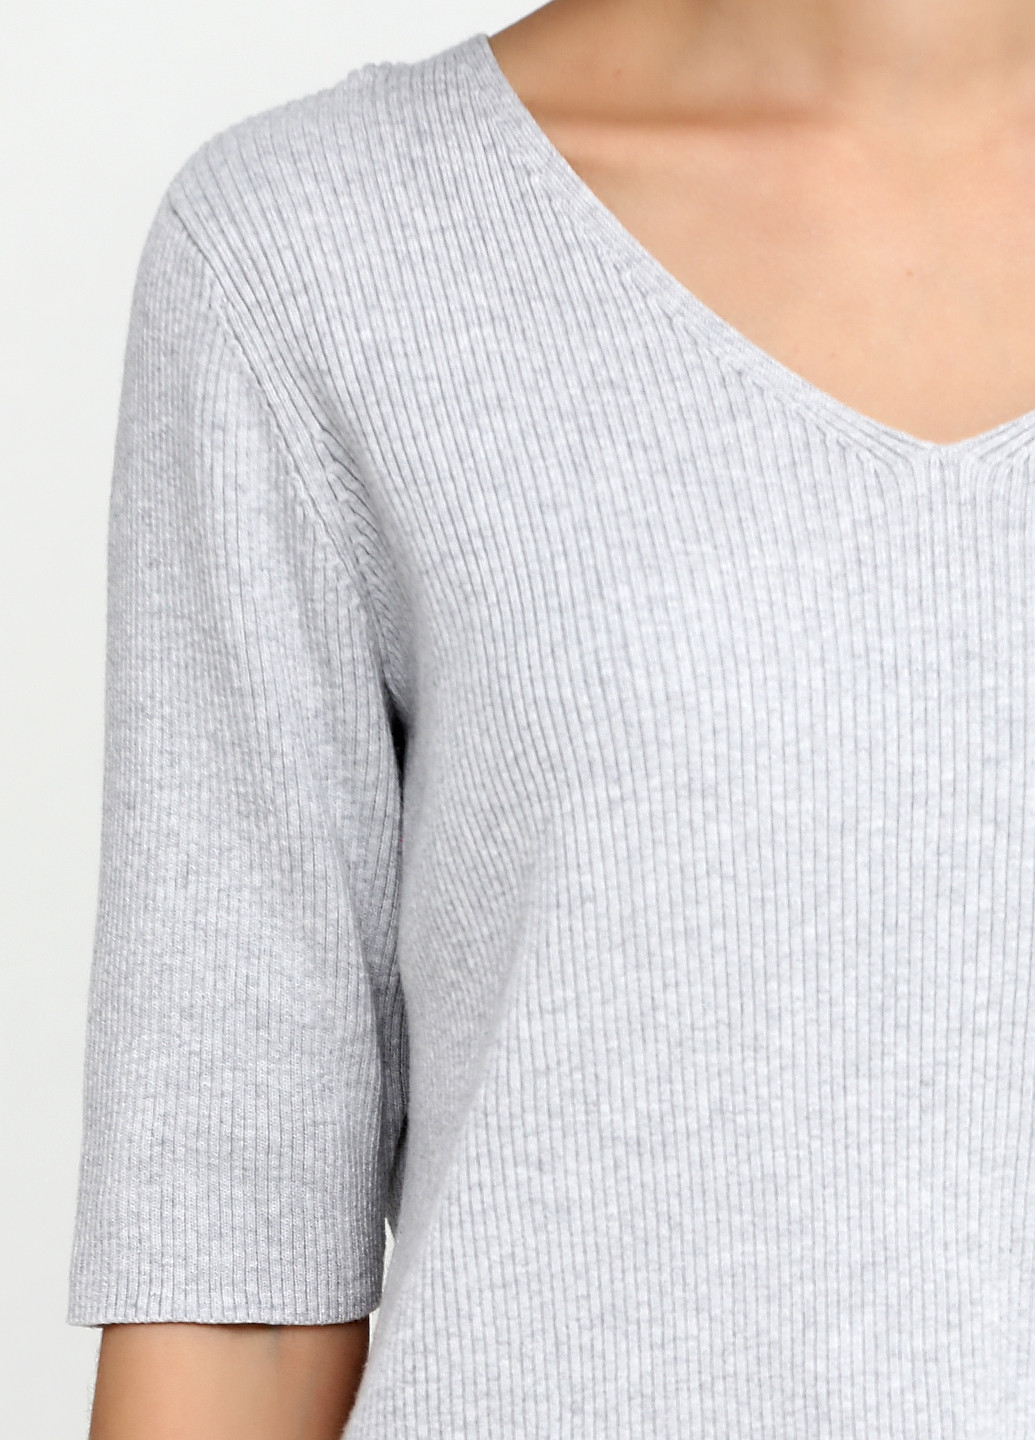 Светло-серый демисезонный пуловер пуловер Lands' End